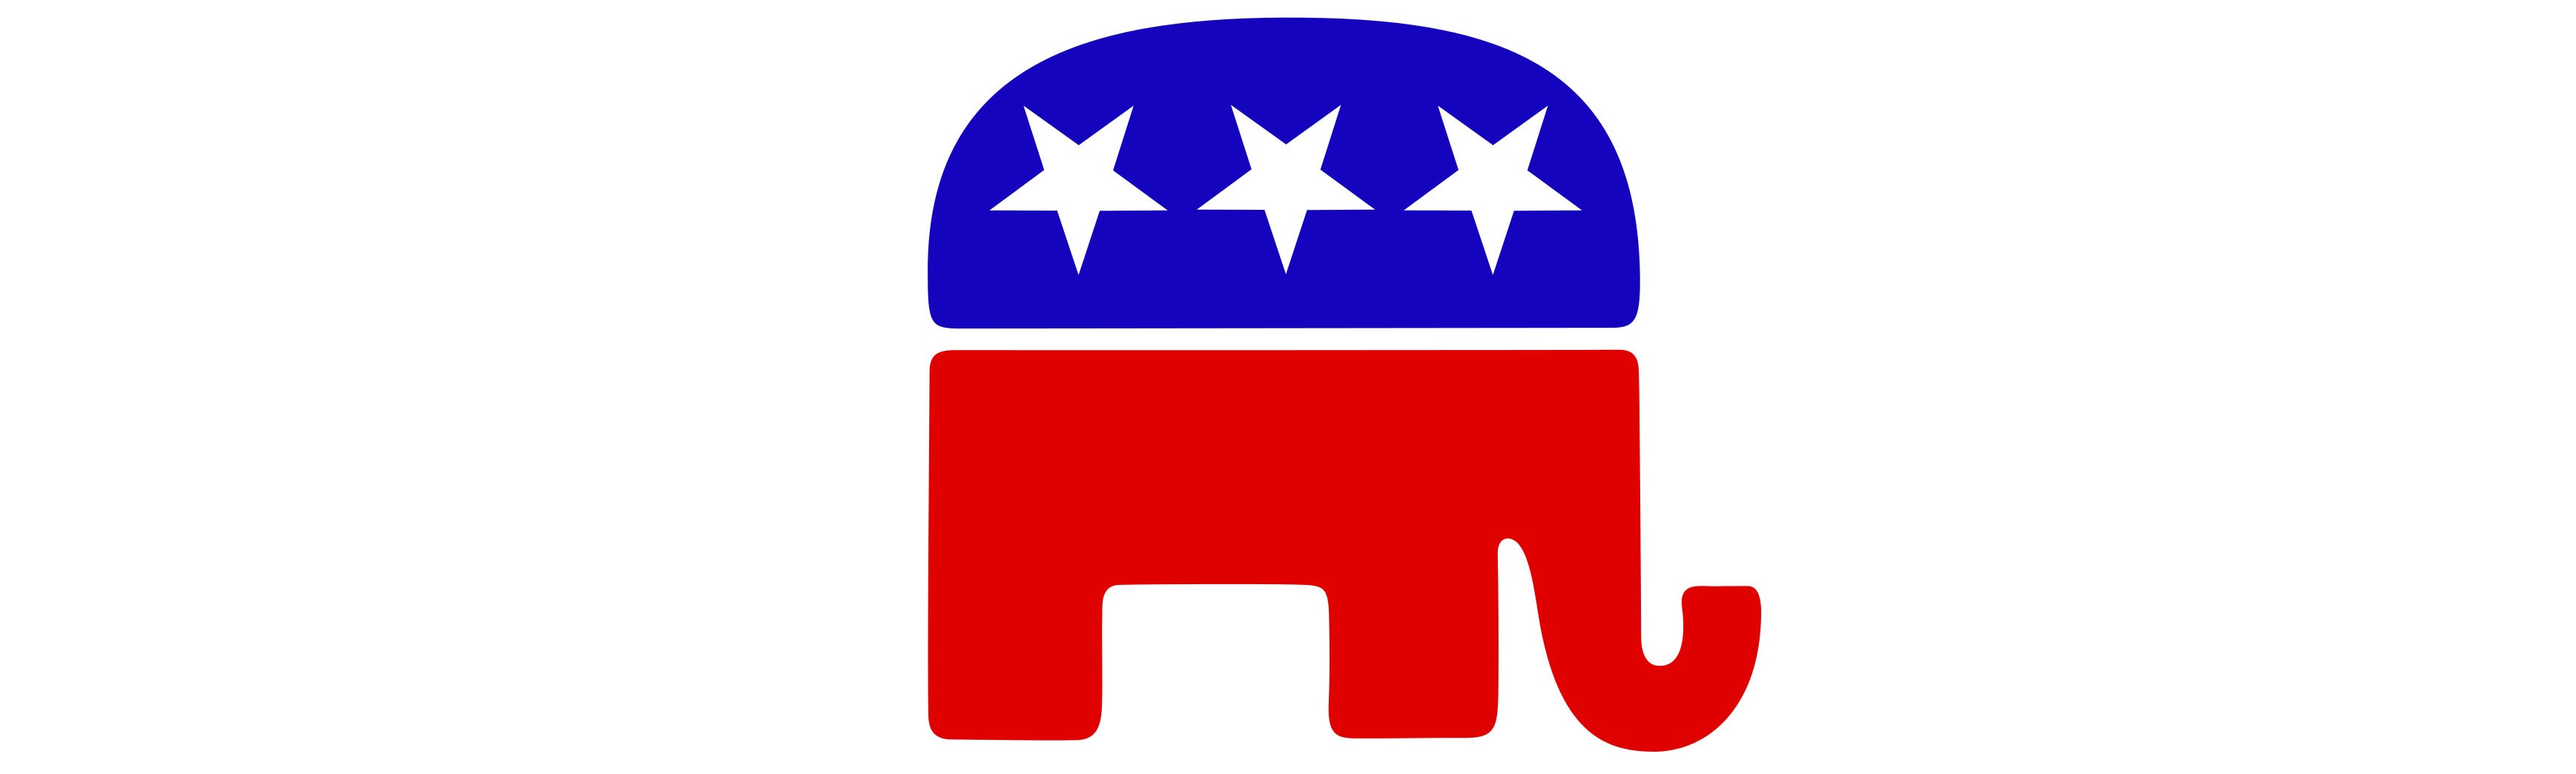 Республиканская партия идеология. Флаг республиканской партии США. Лого республиканской партии США. Символ партии республиканцев в США. Республиканская партия США партия логотип.